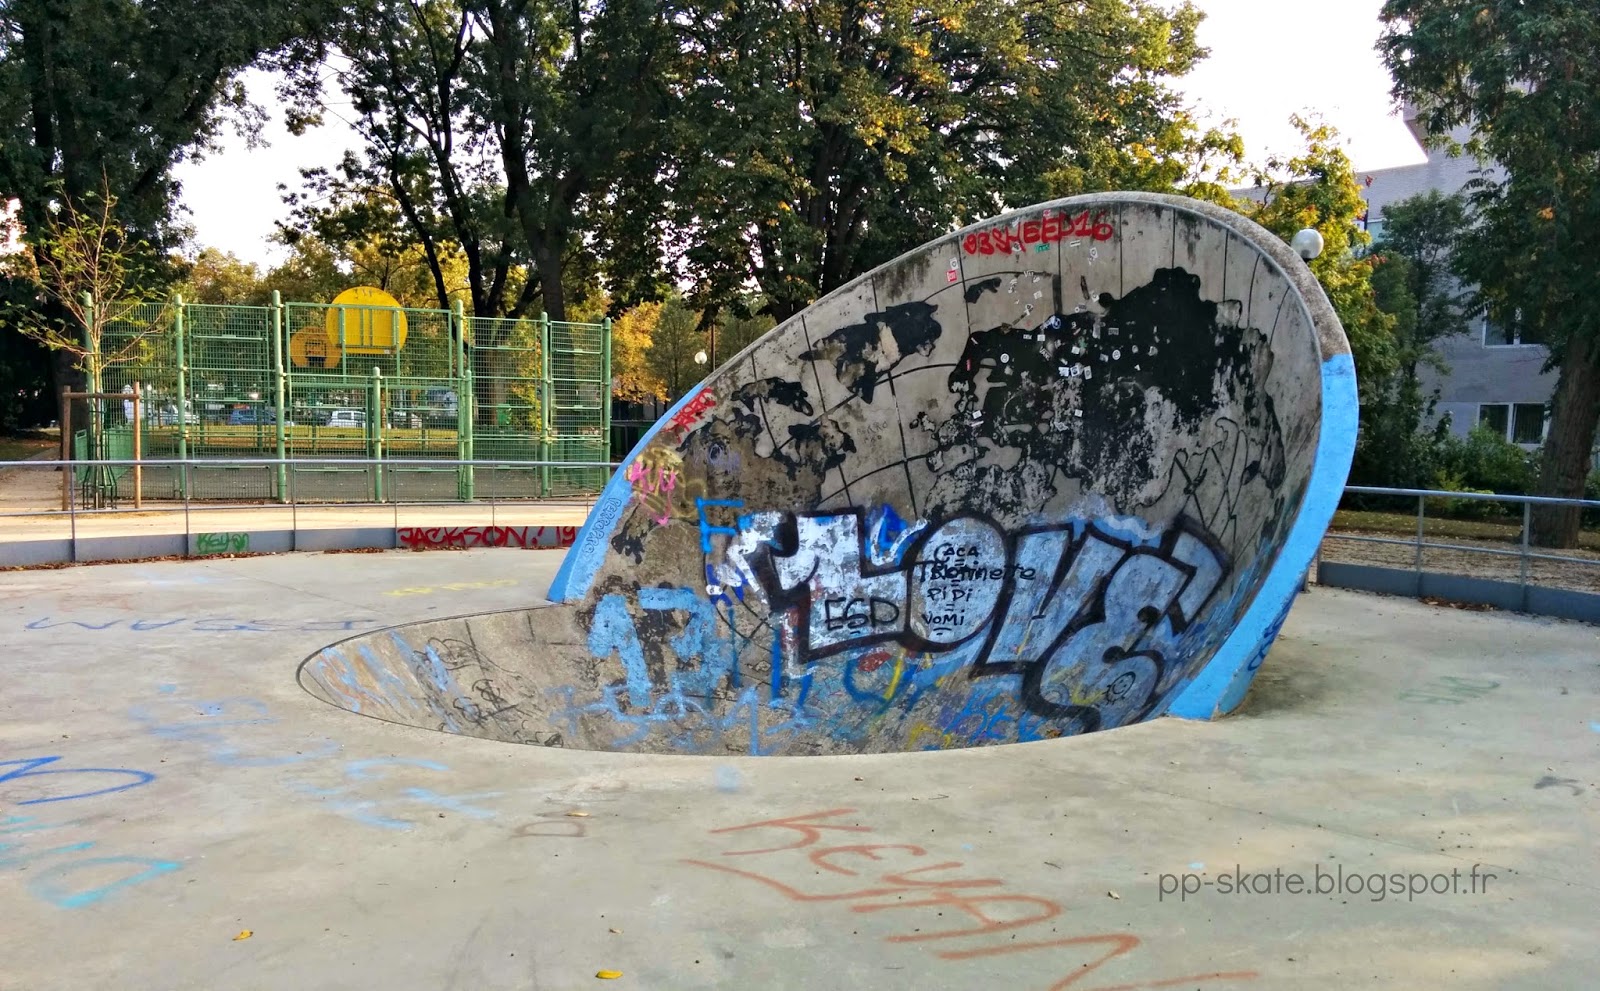 Skatepark paris craddle porte italie